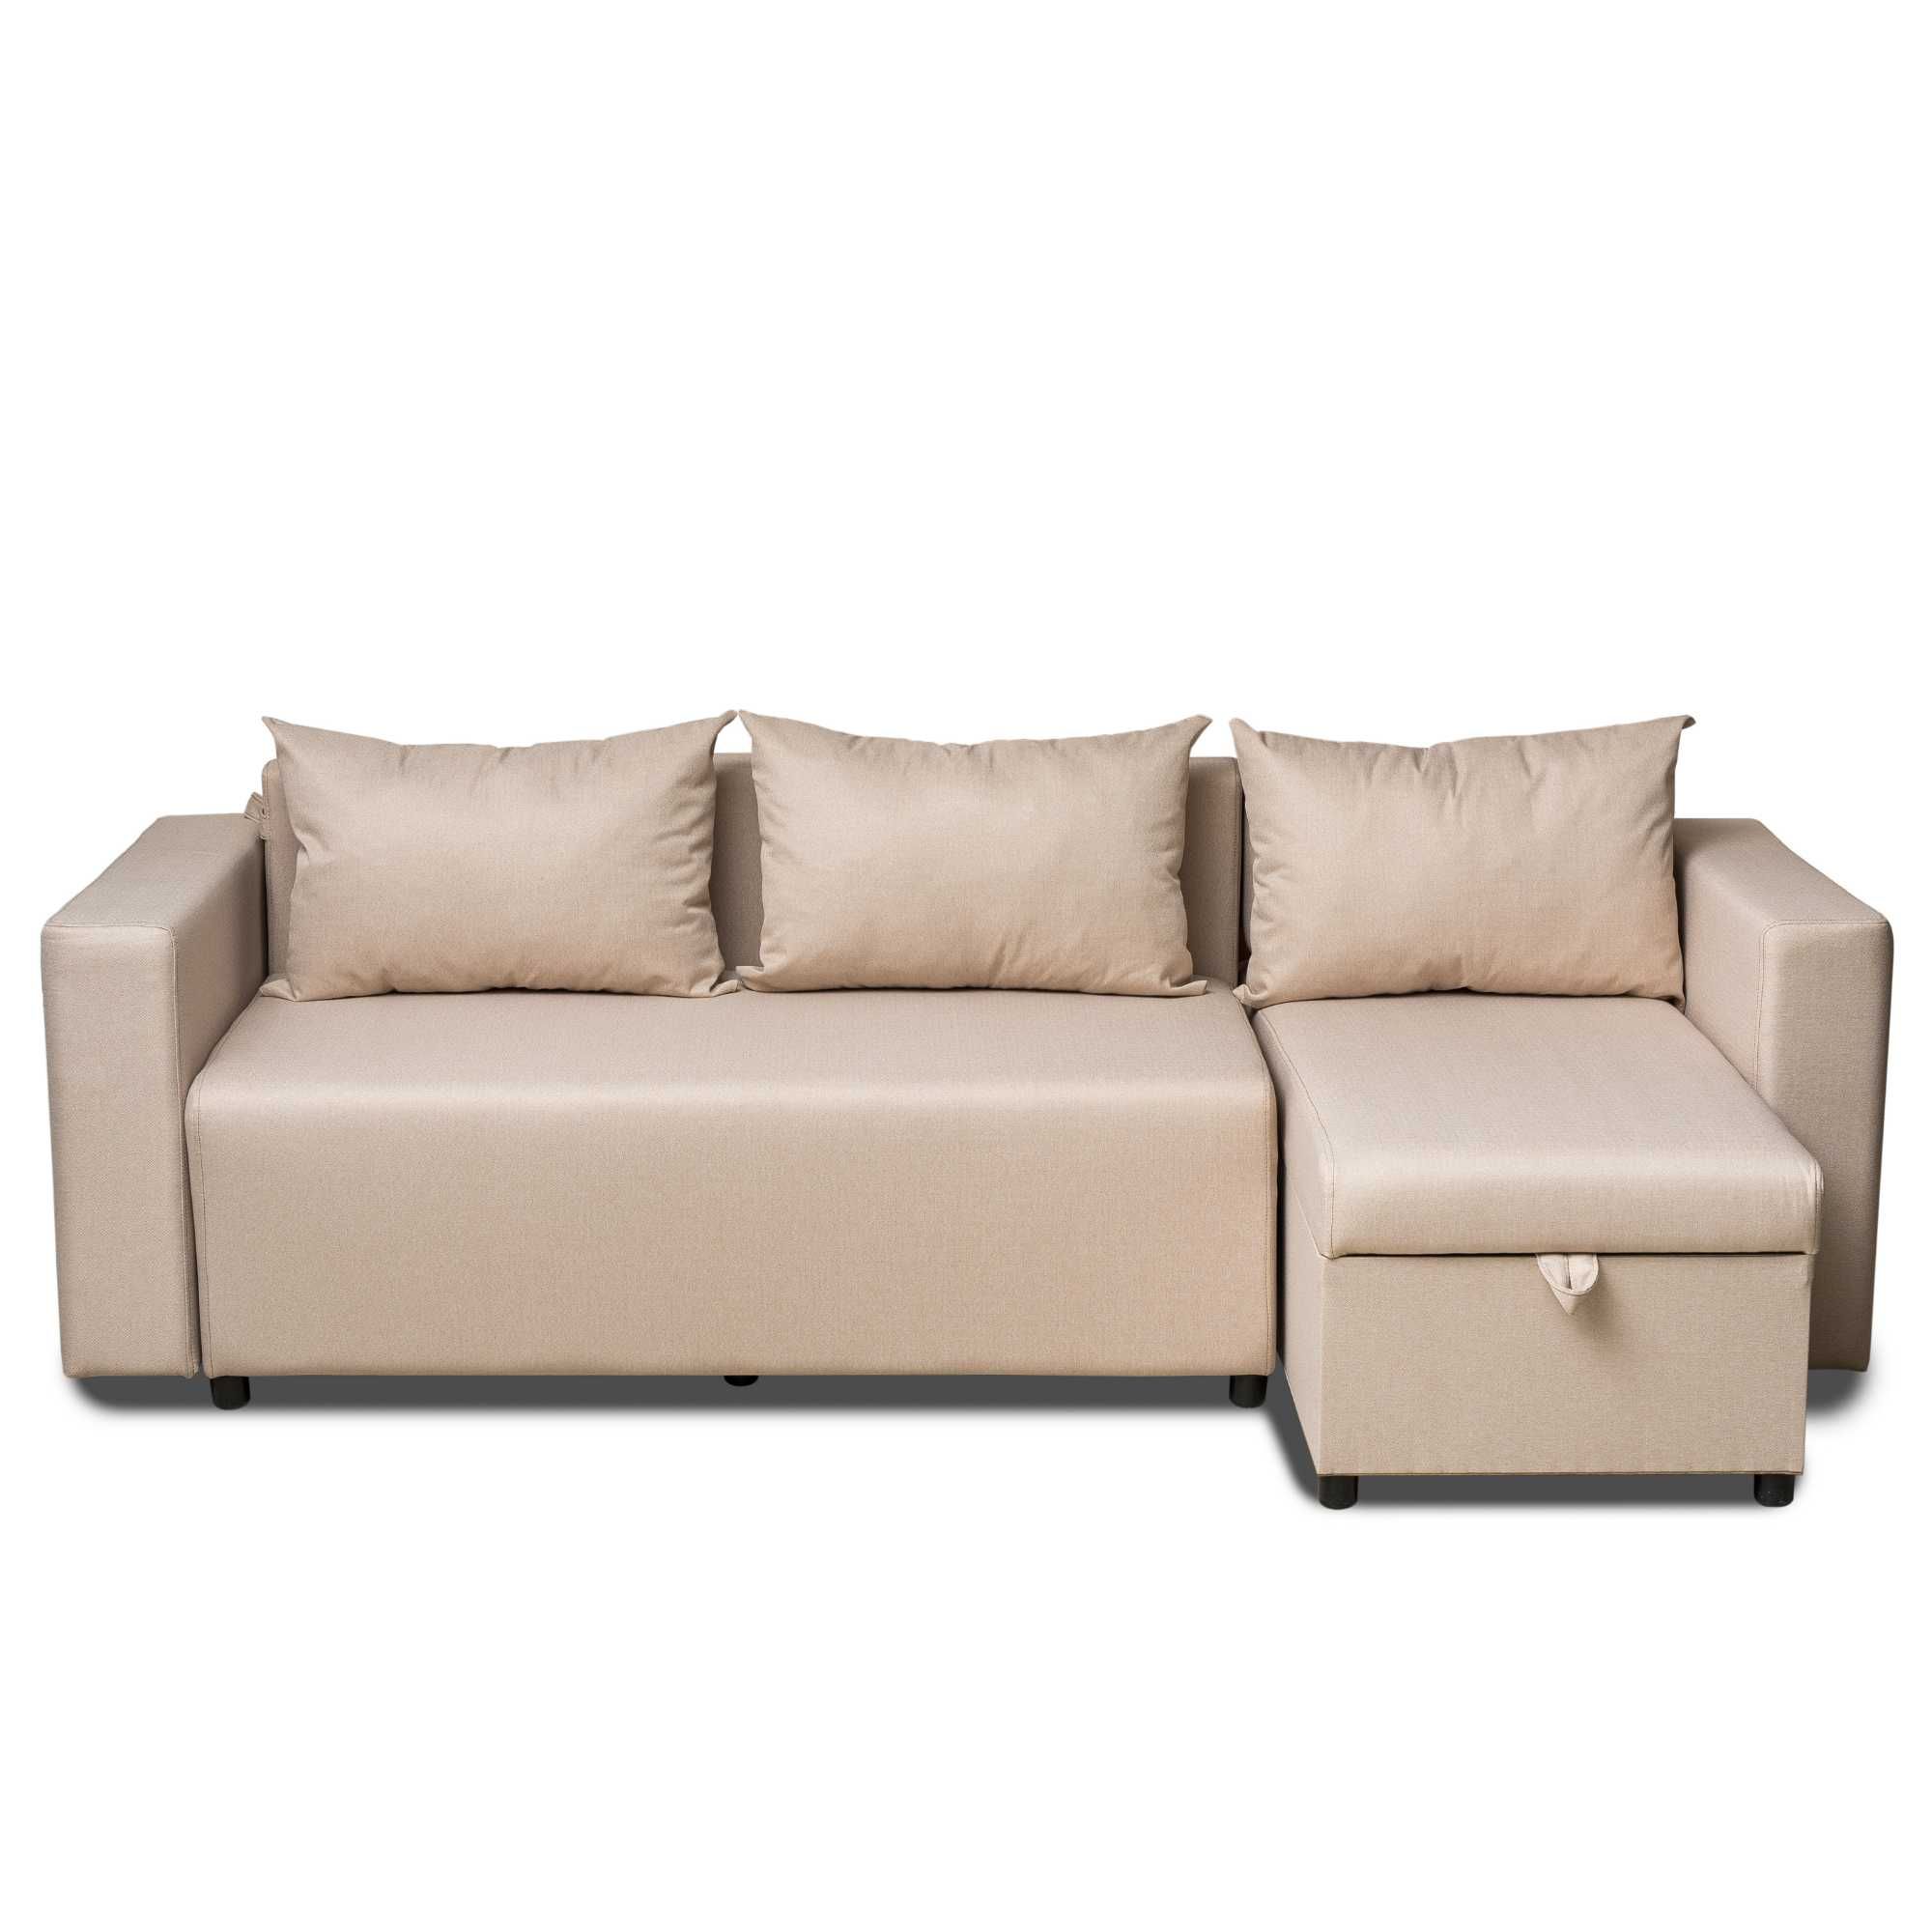 Новый диван угловой Сити 3 бежевый мягкая мебель Доставка бесплатно